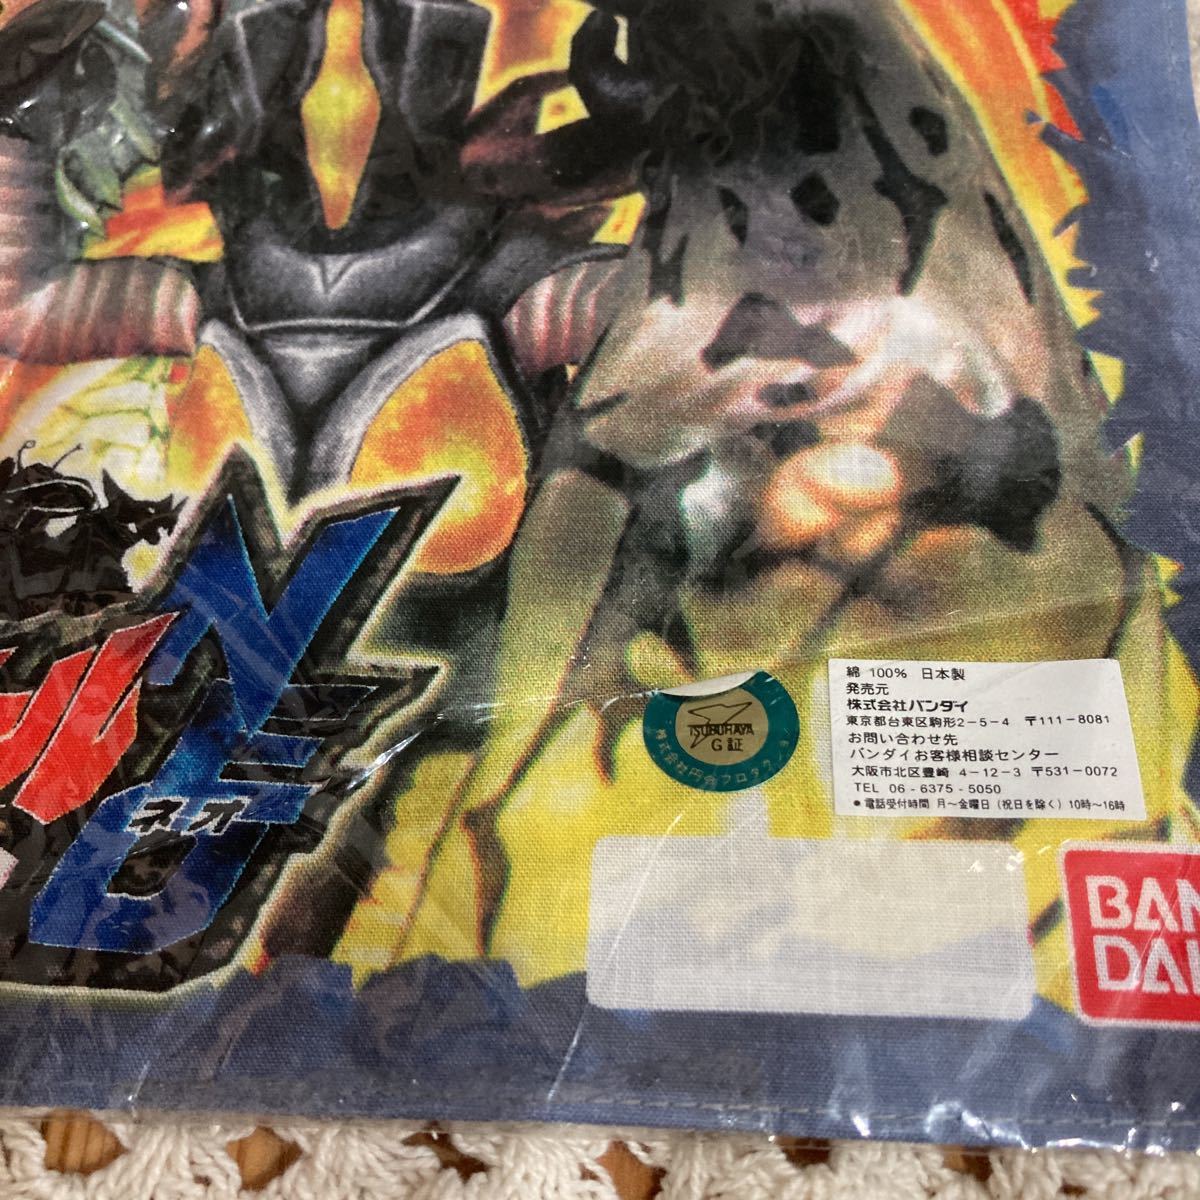  новый товар быстрое решение бесплатная доставка! ценный редкость сделано в Японии Daikaijyu Battle NEO носовой платок хлопок 100%